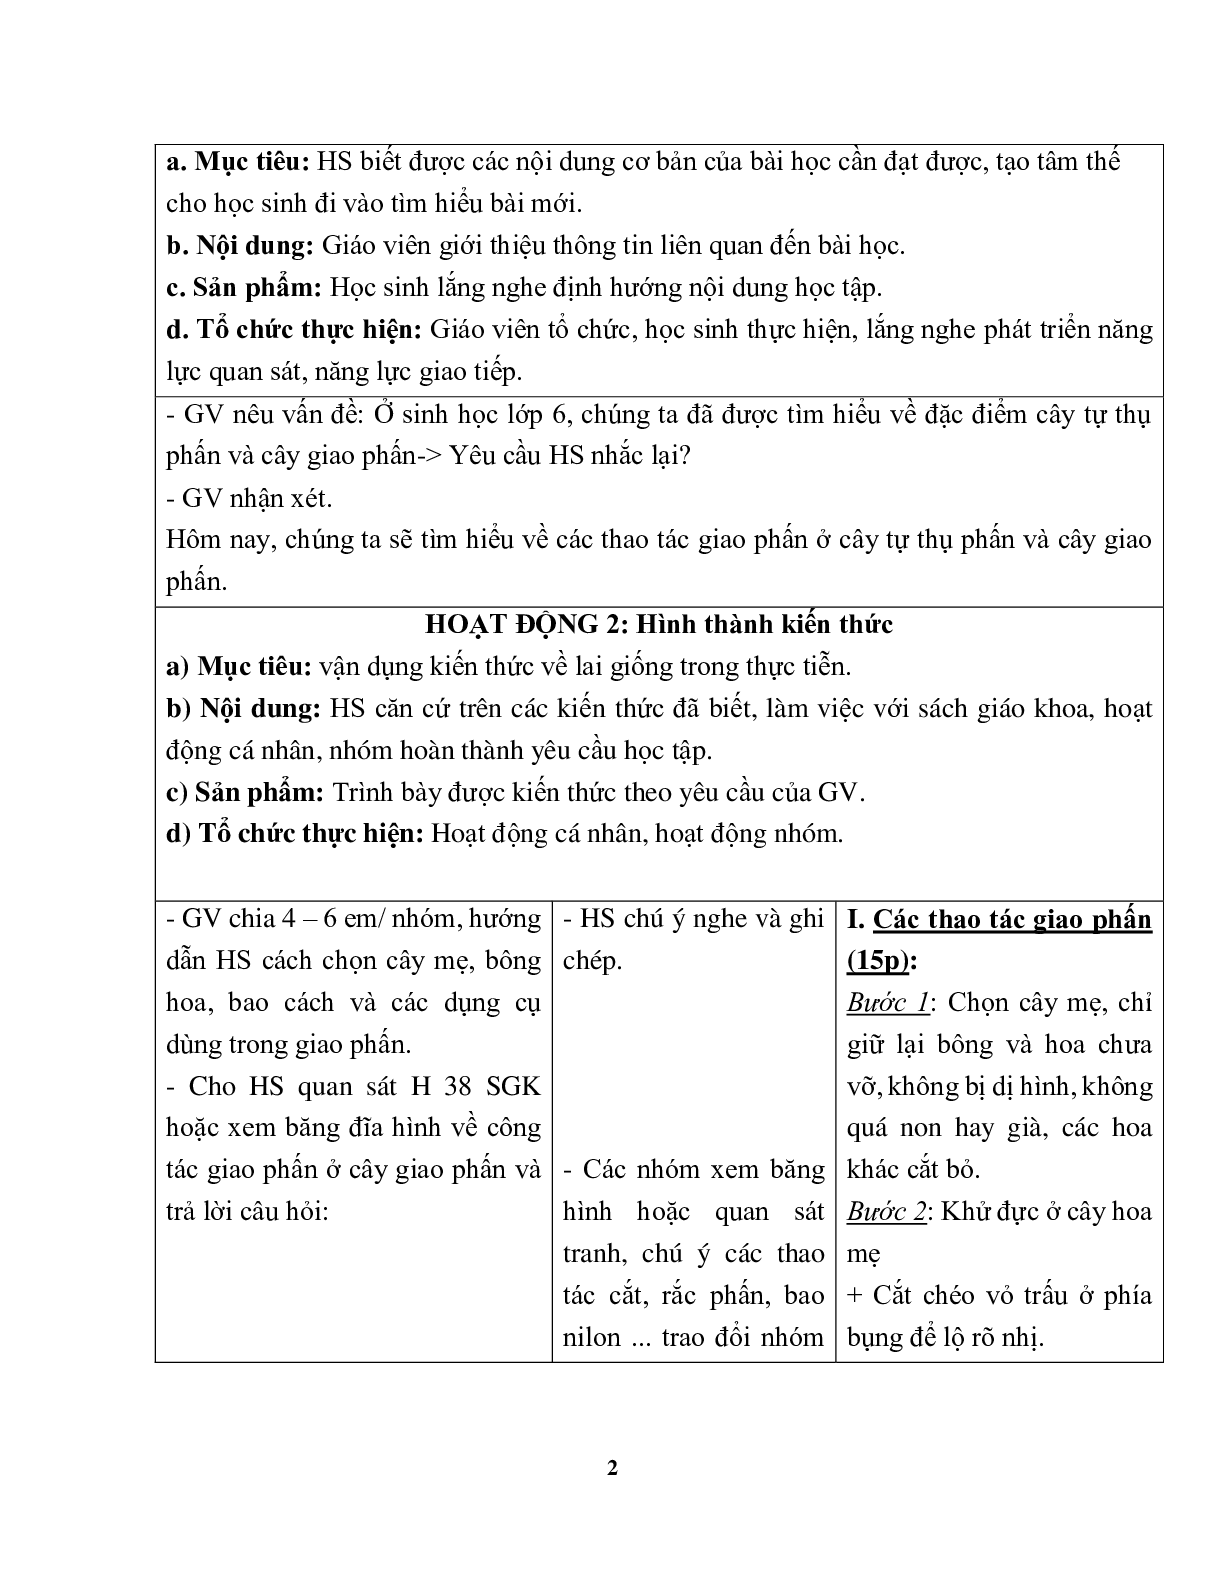 Giáo án Sinh học 9 Bài 38: Thực hành Tập dượt thao tác giao phấn mới nhất - CV5555 (trang 2)